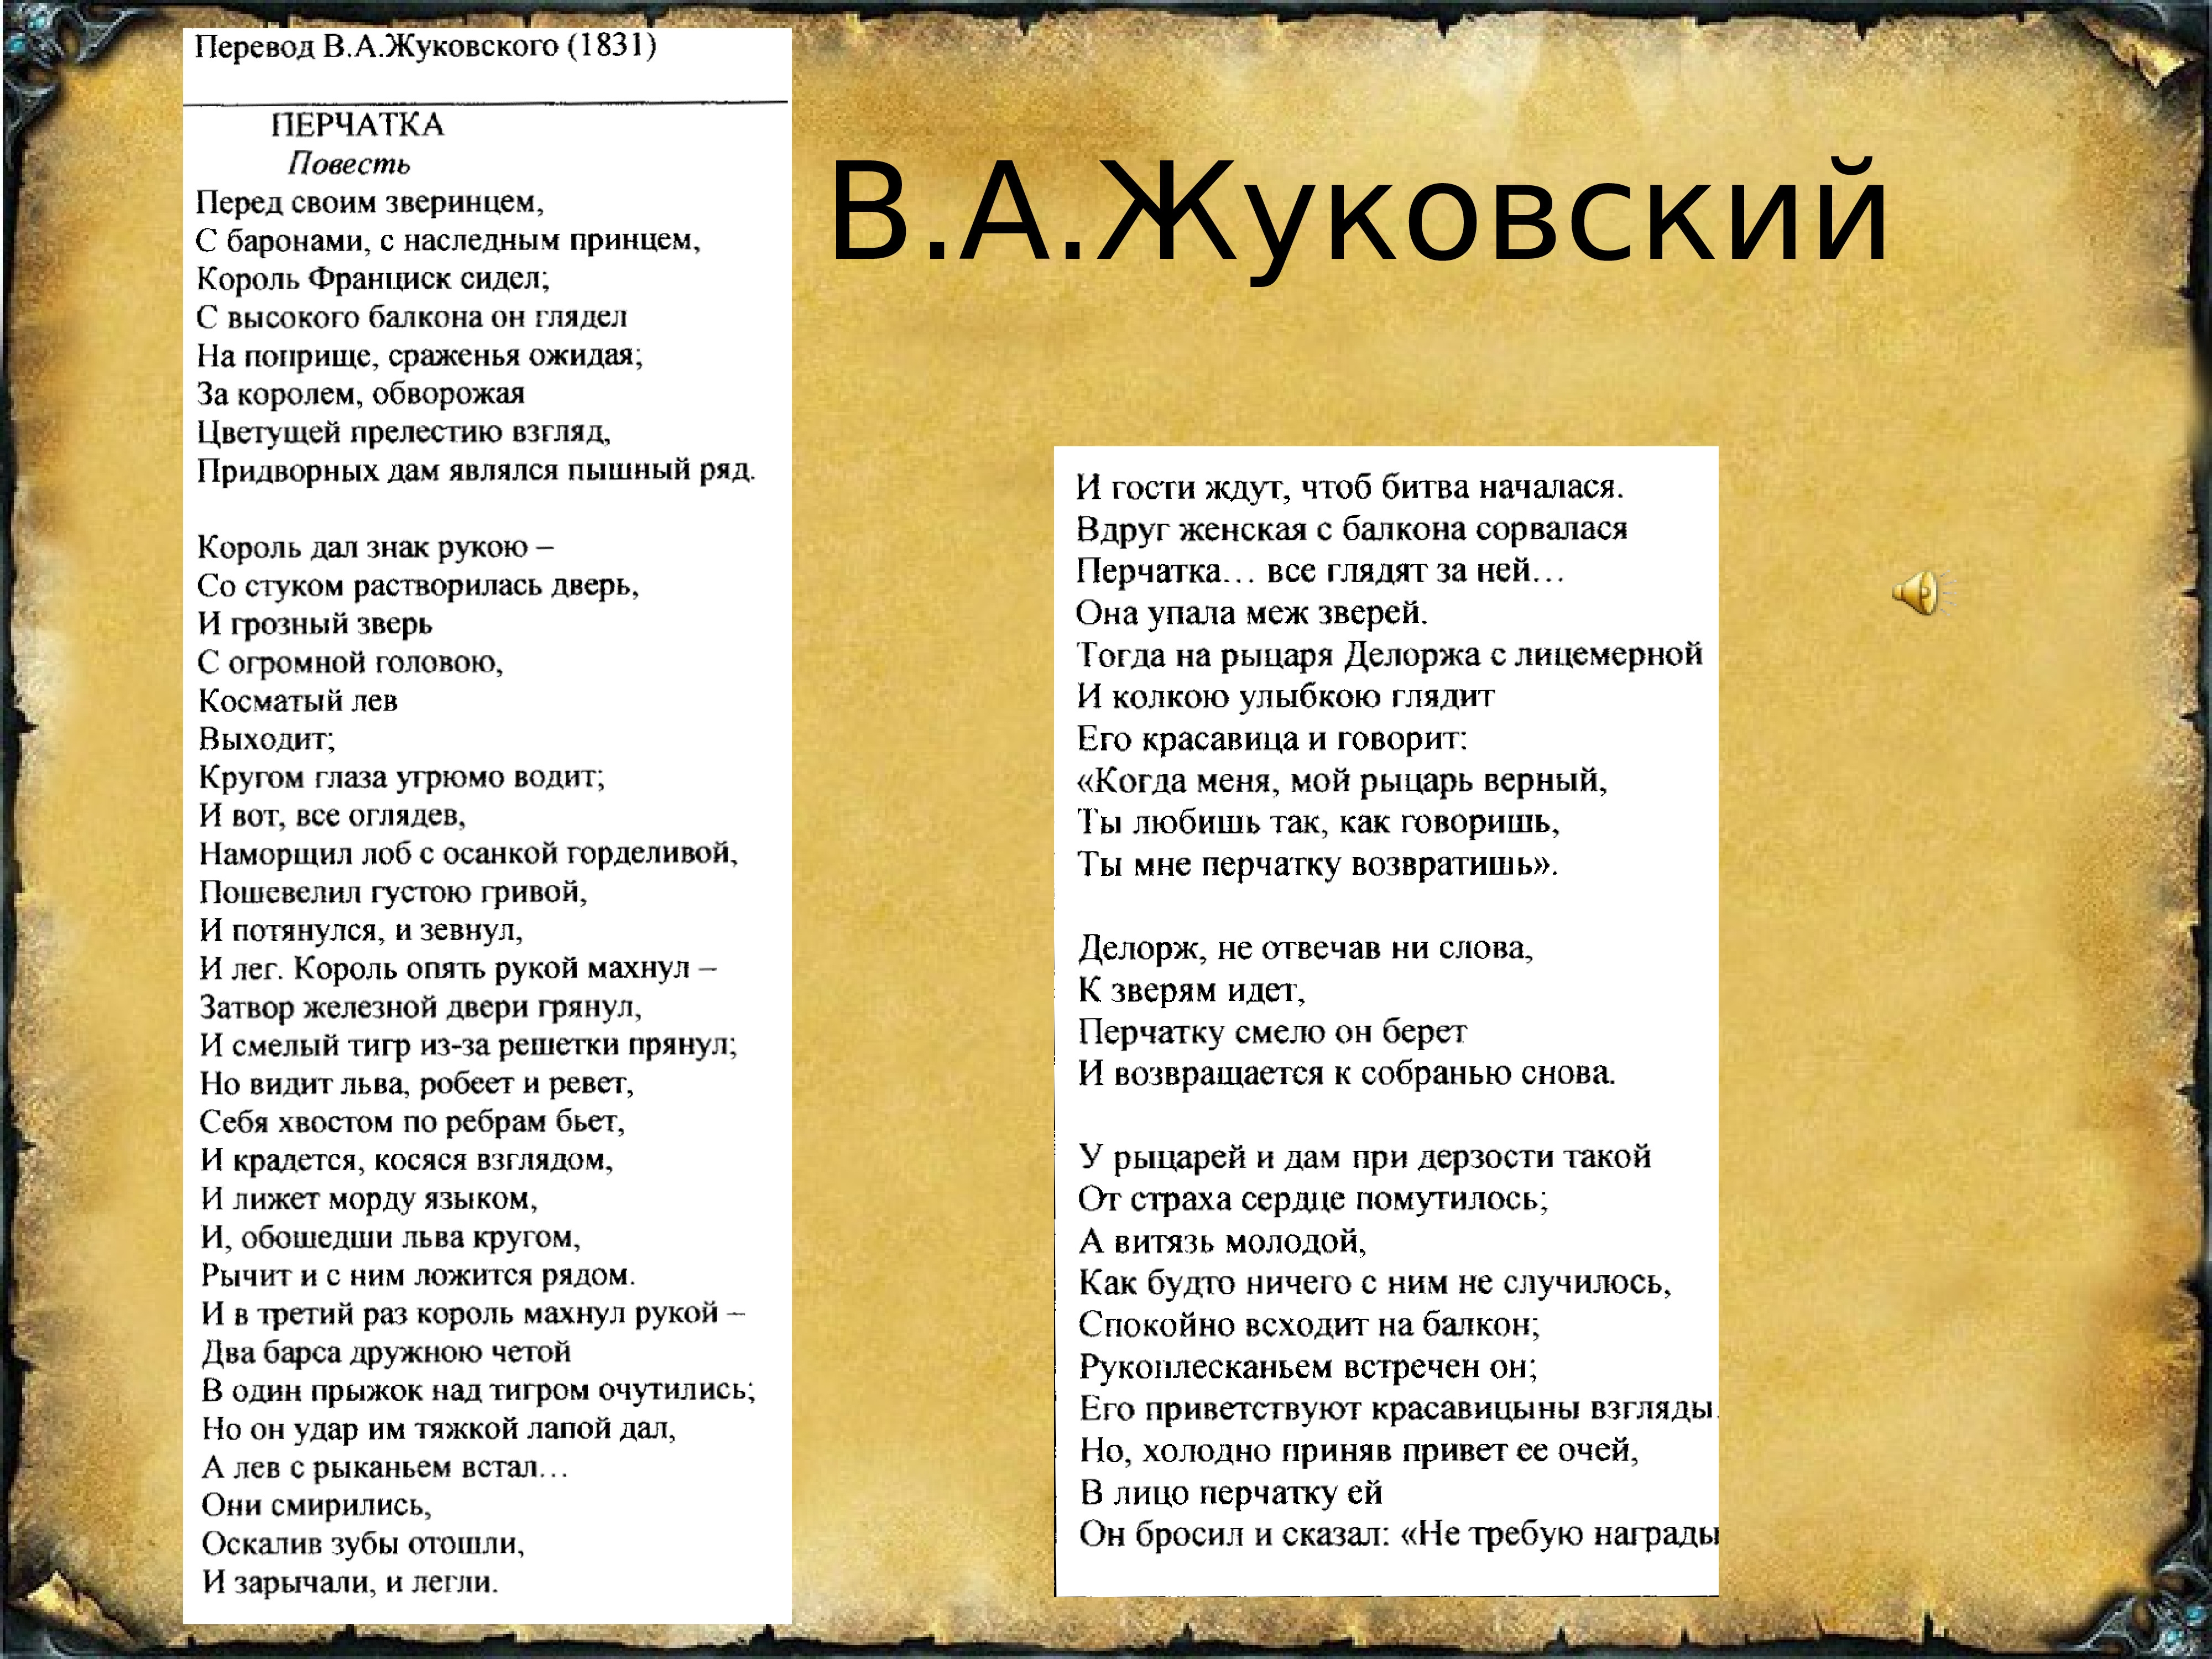 Перчатка стих Жуковский текст